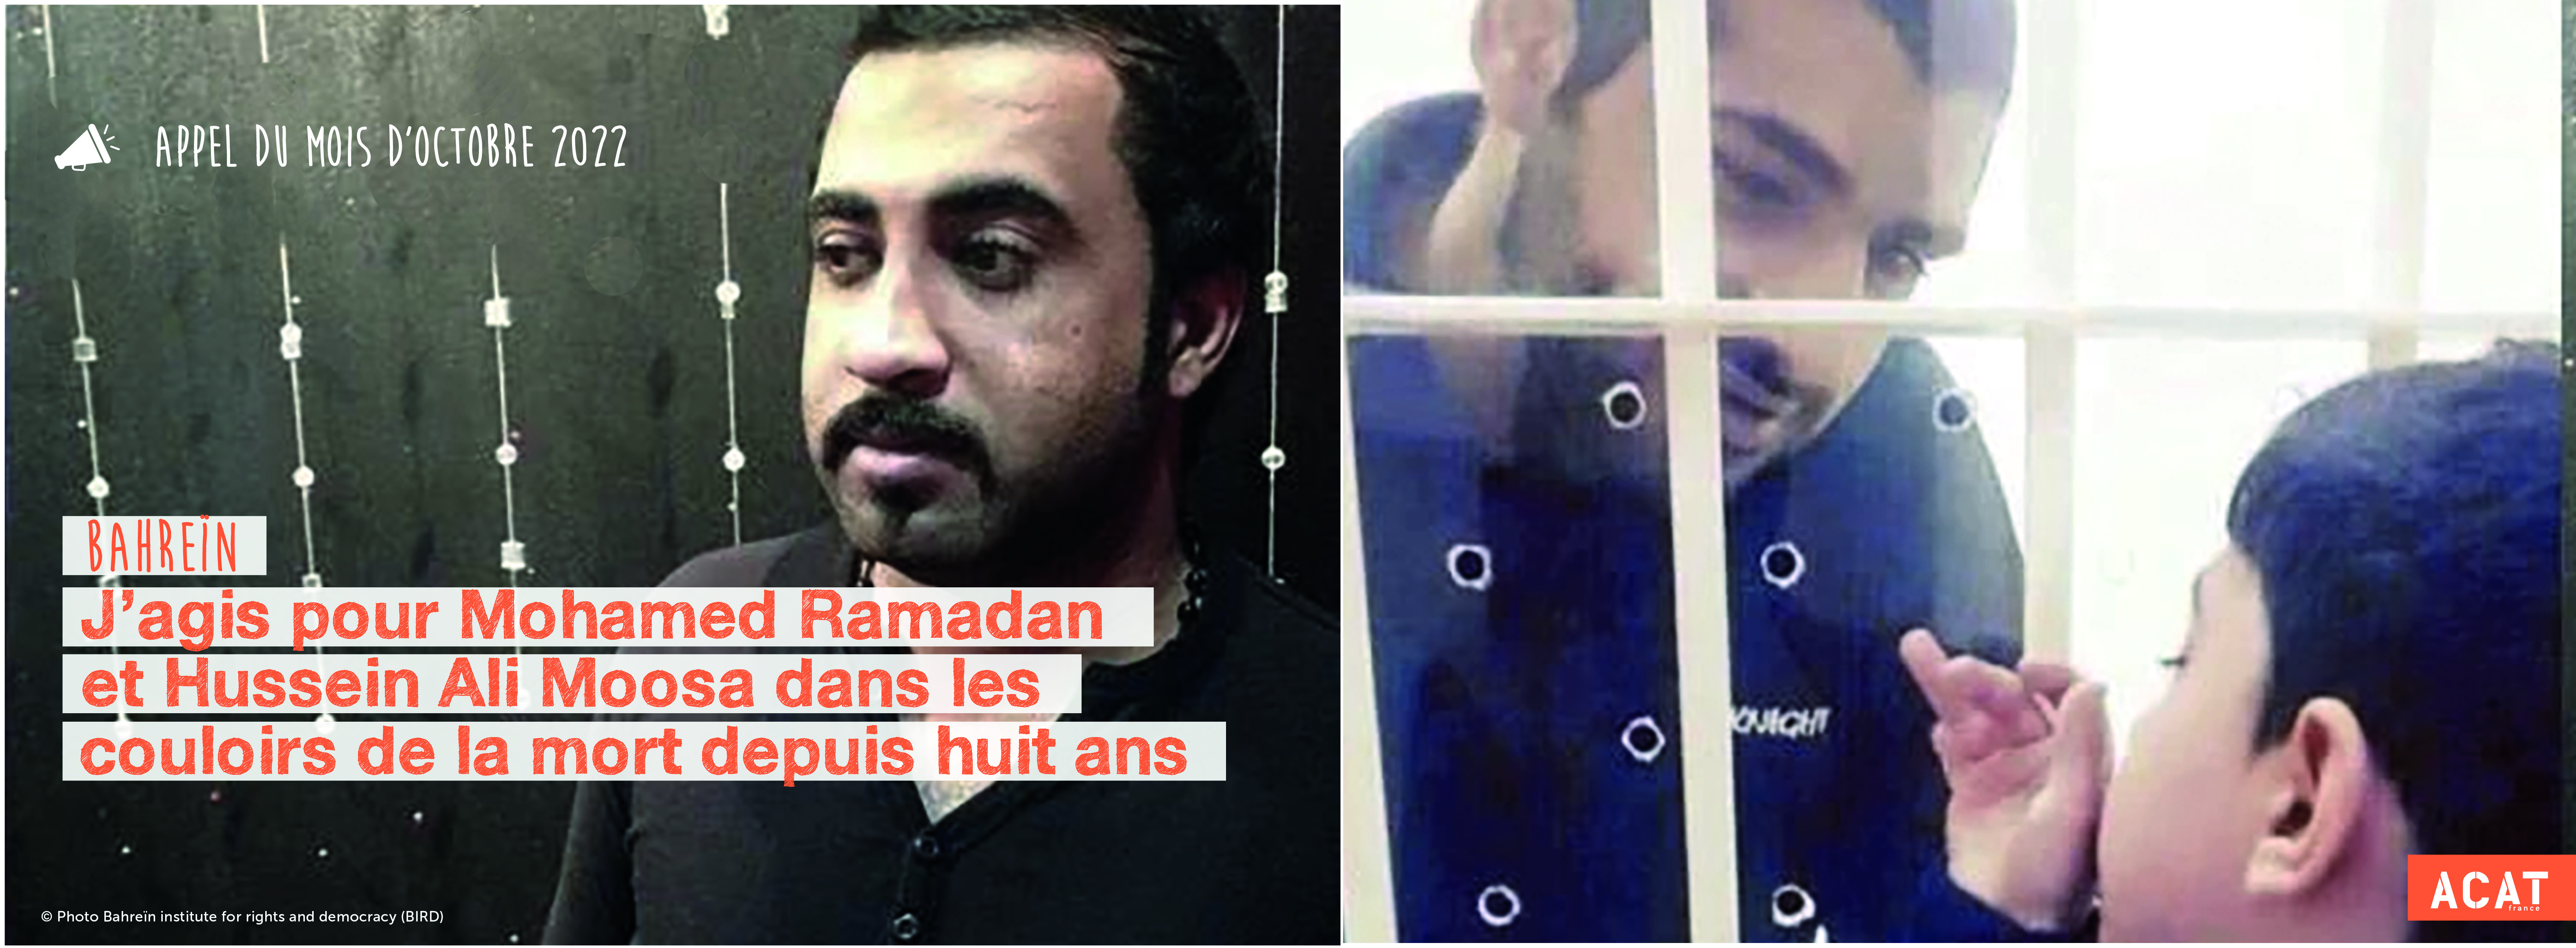 J’agis pour Mohamed Ramadan et Hussein Ali Moosa dans les couloirs de la mort depuis huit ans